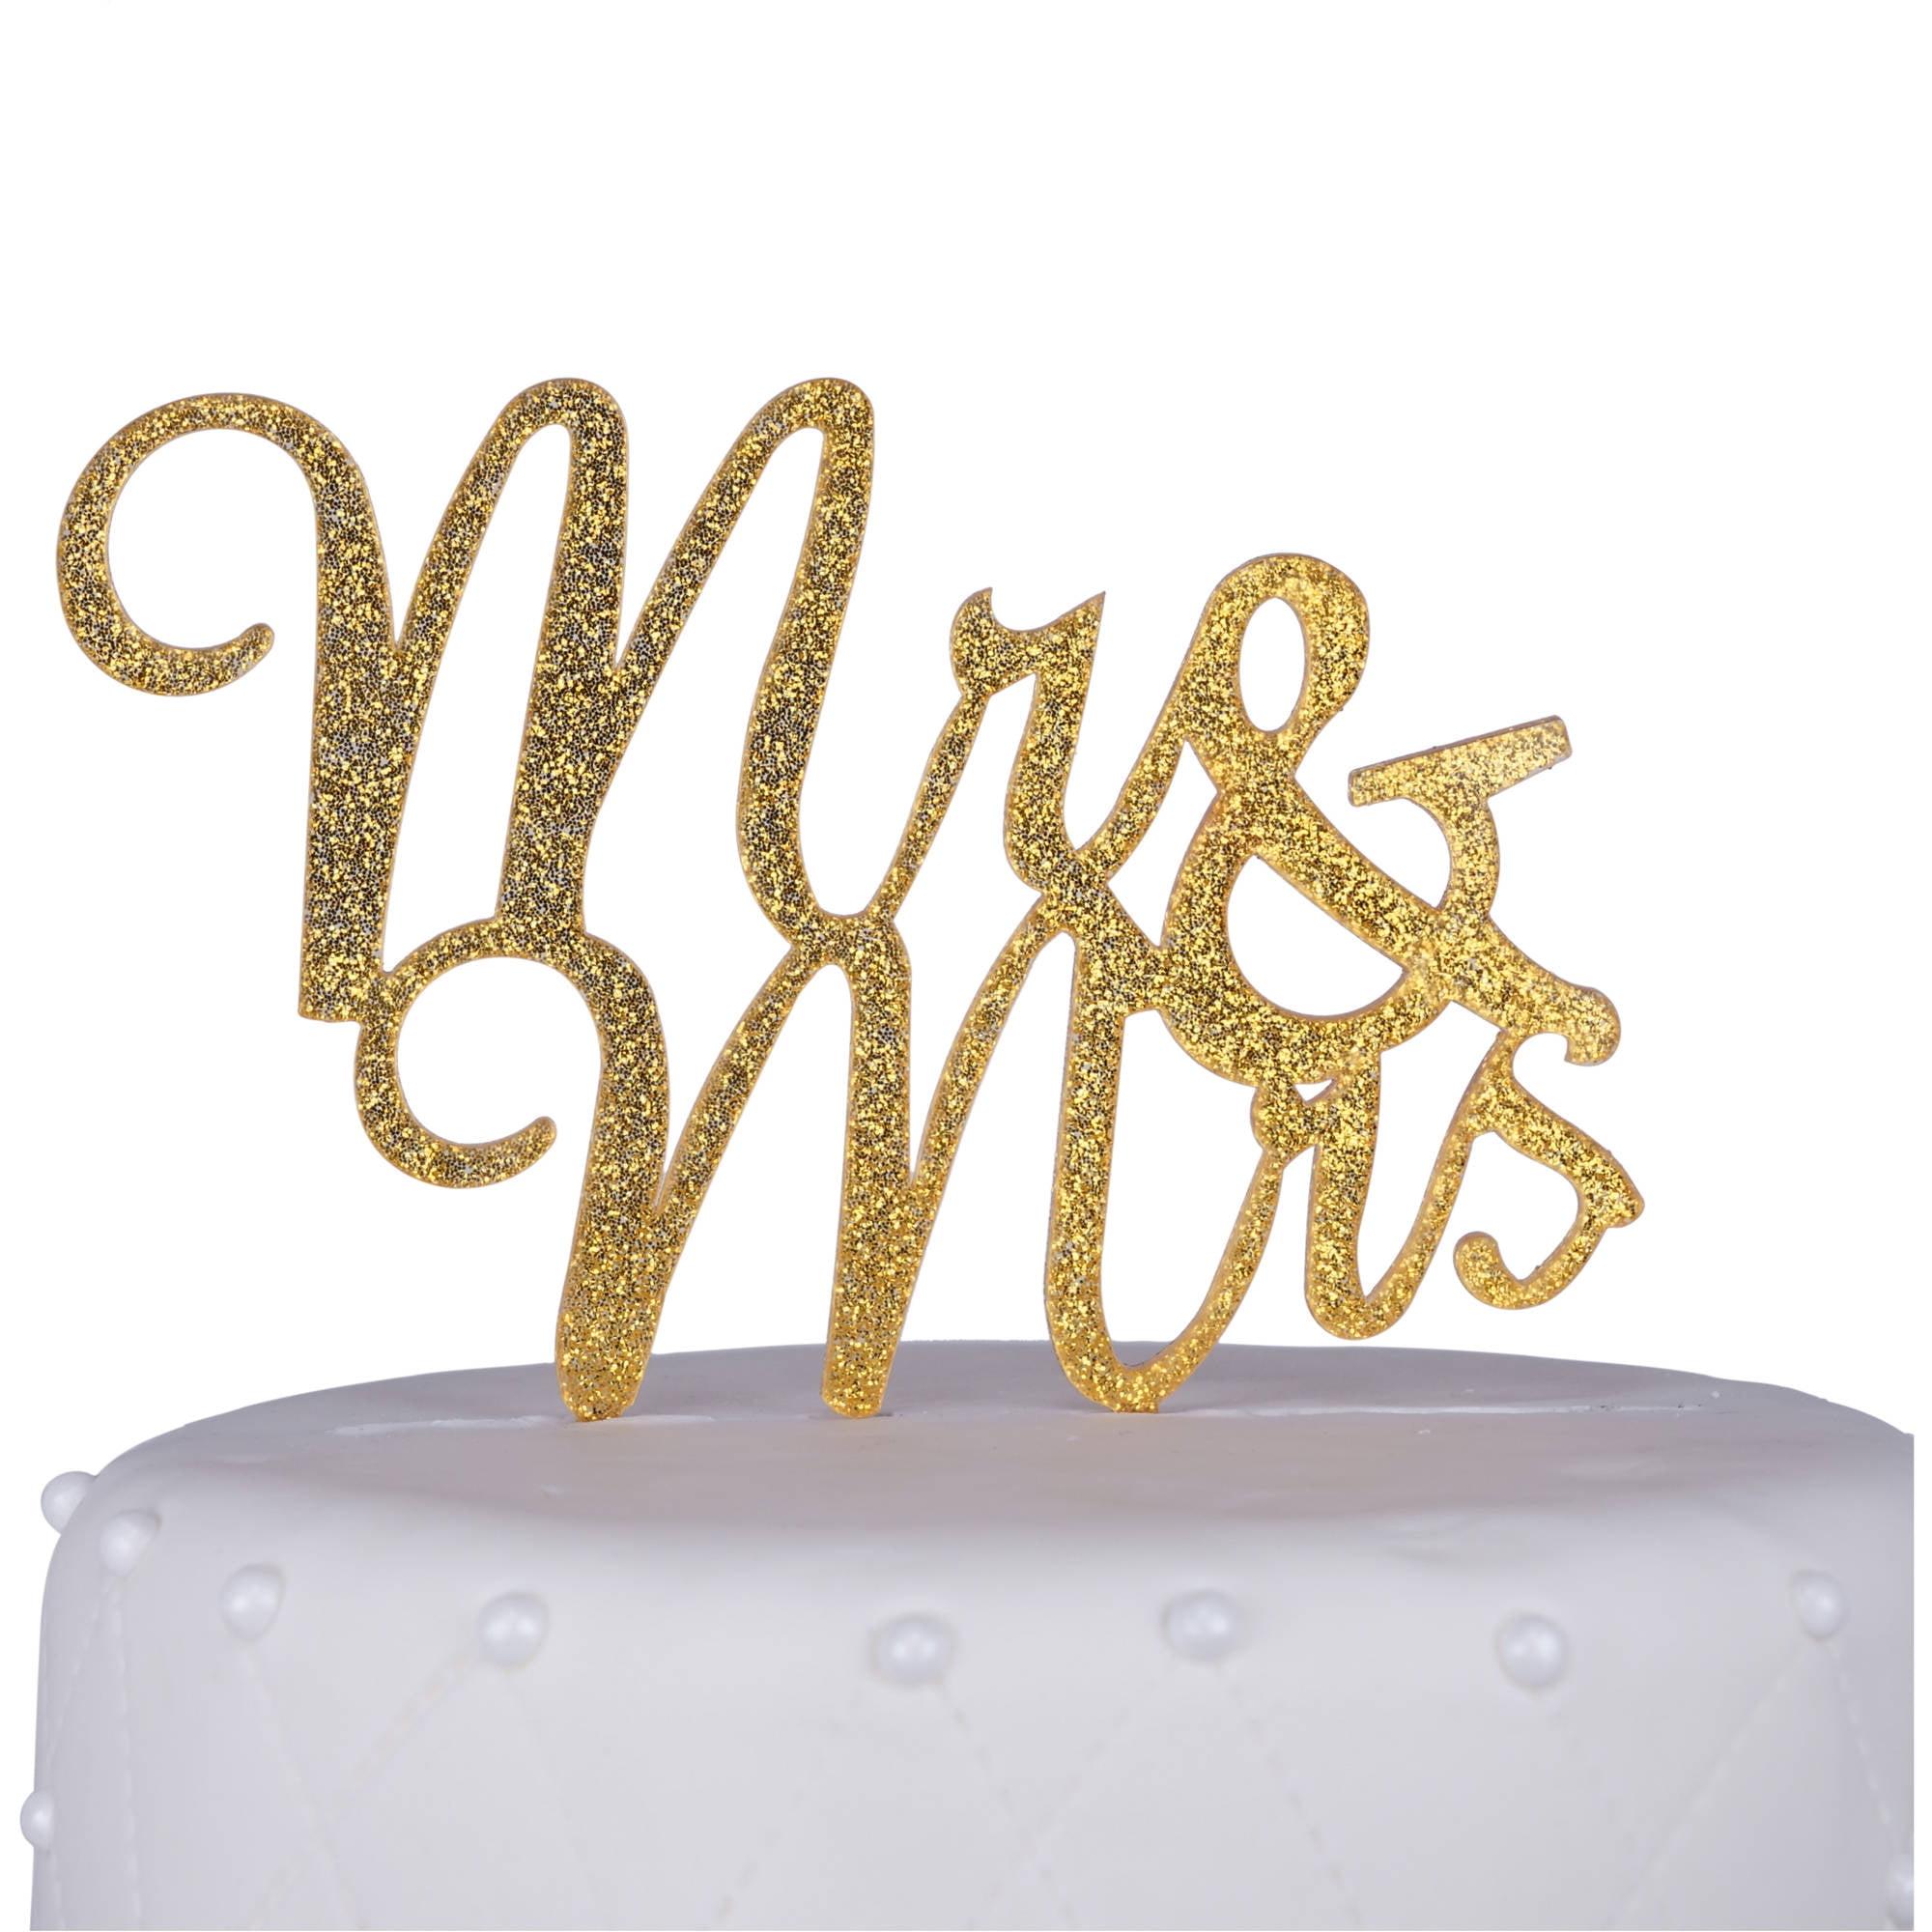 Economic Mr&Mrs Romantic Shiny Cake Topper Wedding Party Top Letter Decor AU 